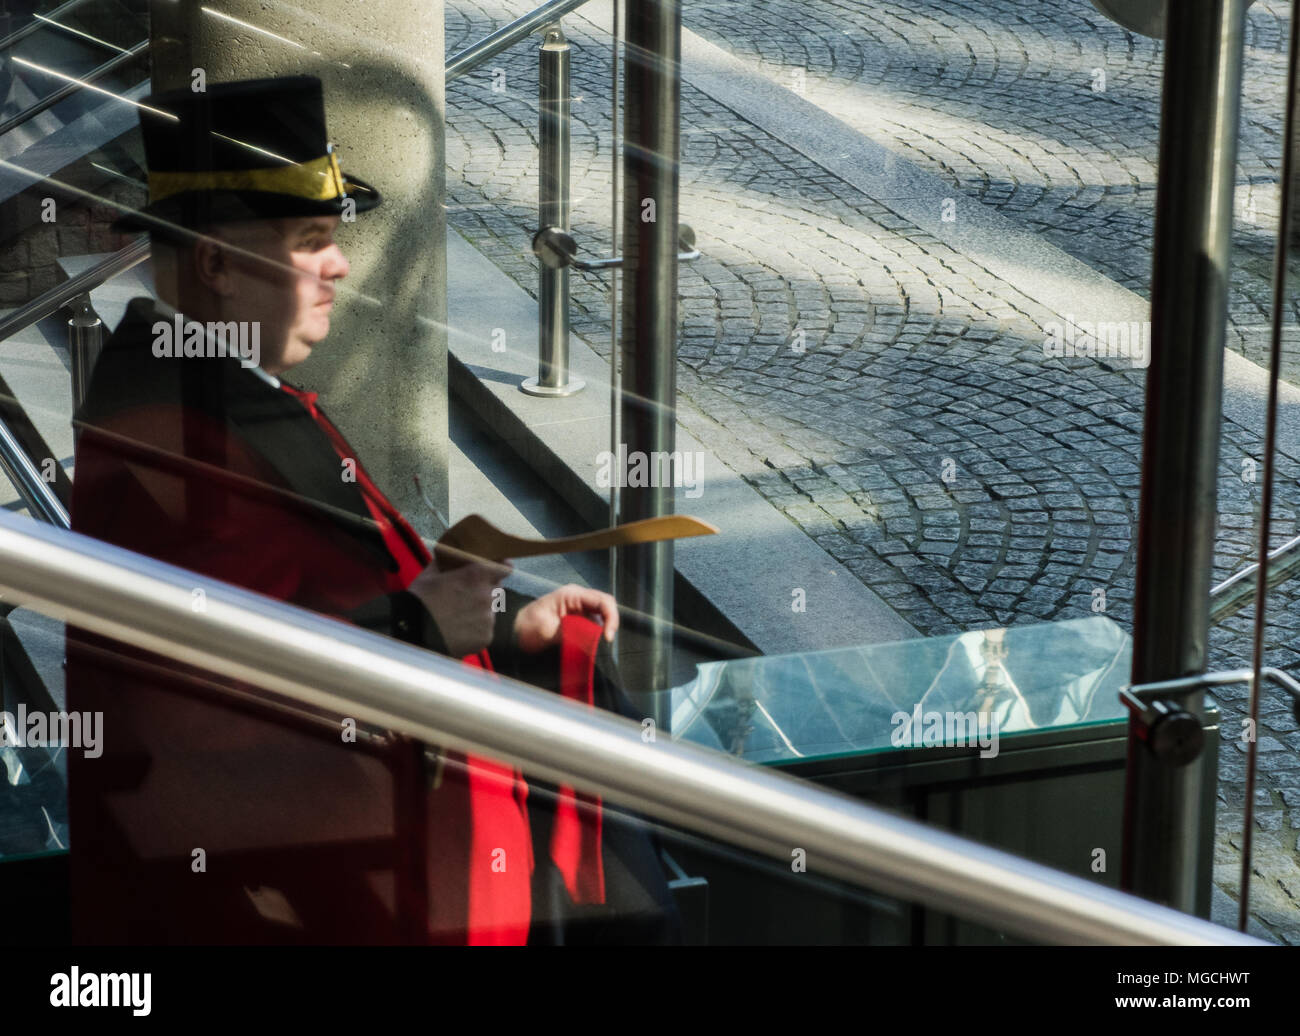 Doorman with top hat putting coat on coat hanger, seen through glass window Stock Photo